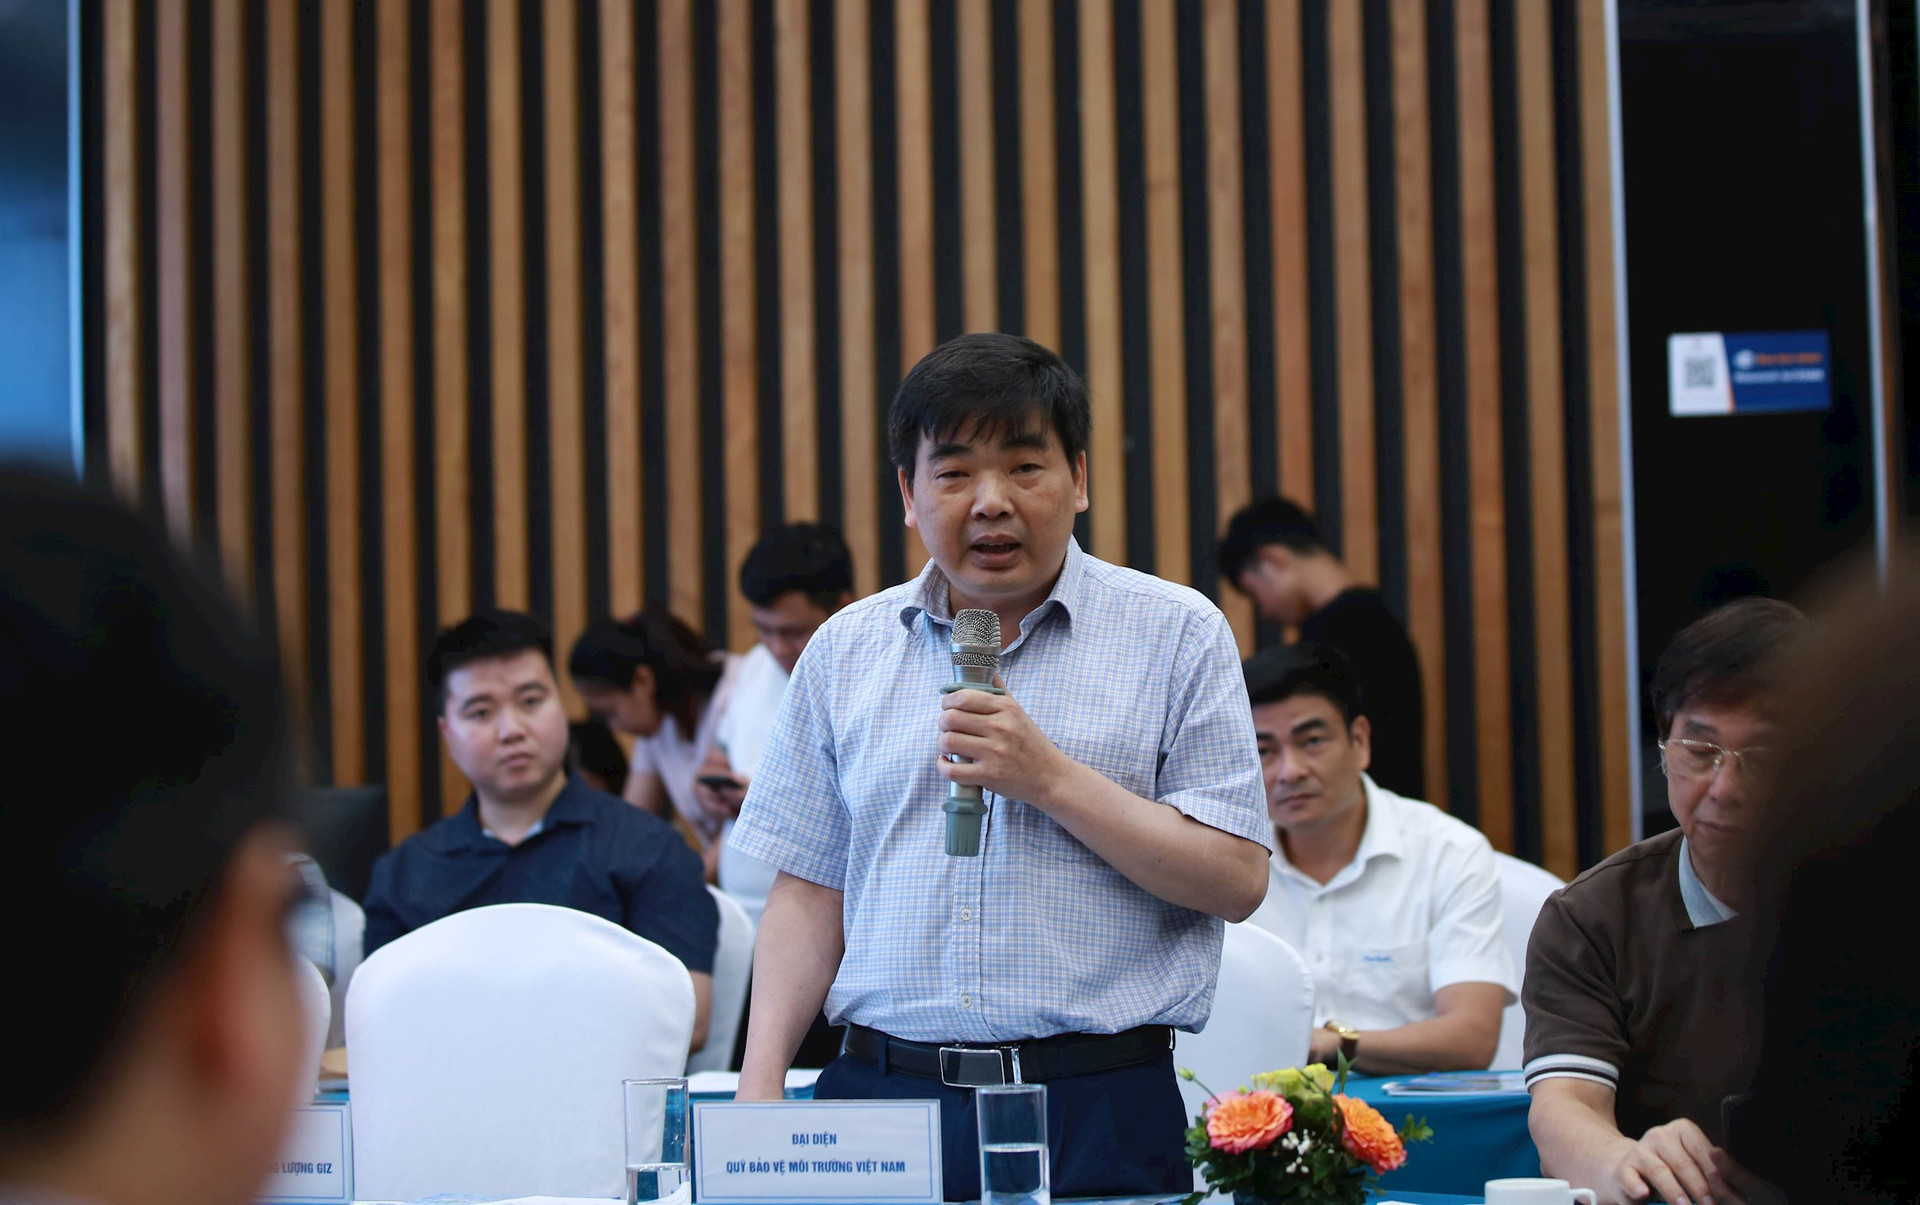 Ông Phạm Văn Triệu, Phó Giám đốc Quỹ Bảo vệ môi trường Việt Nam